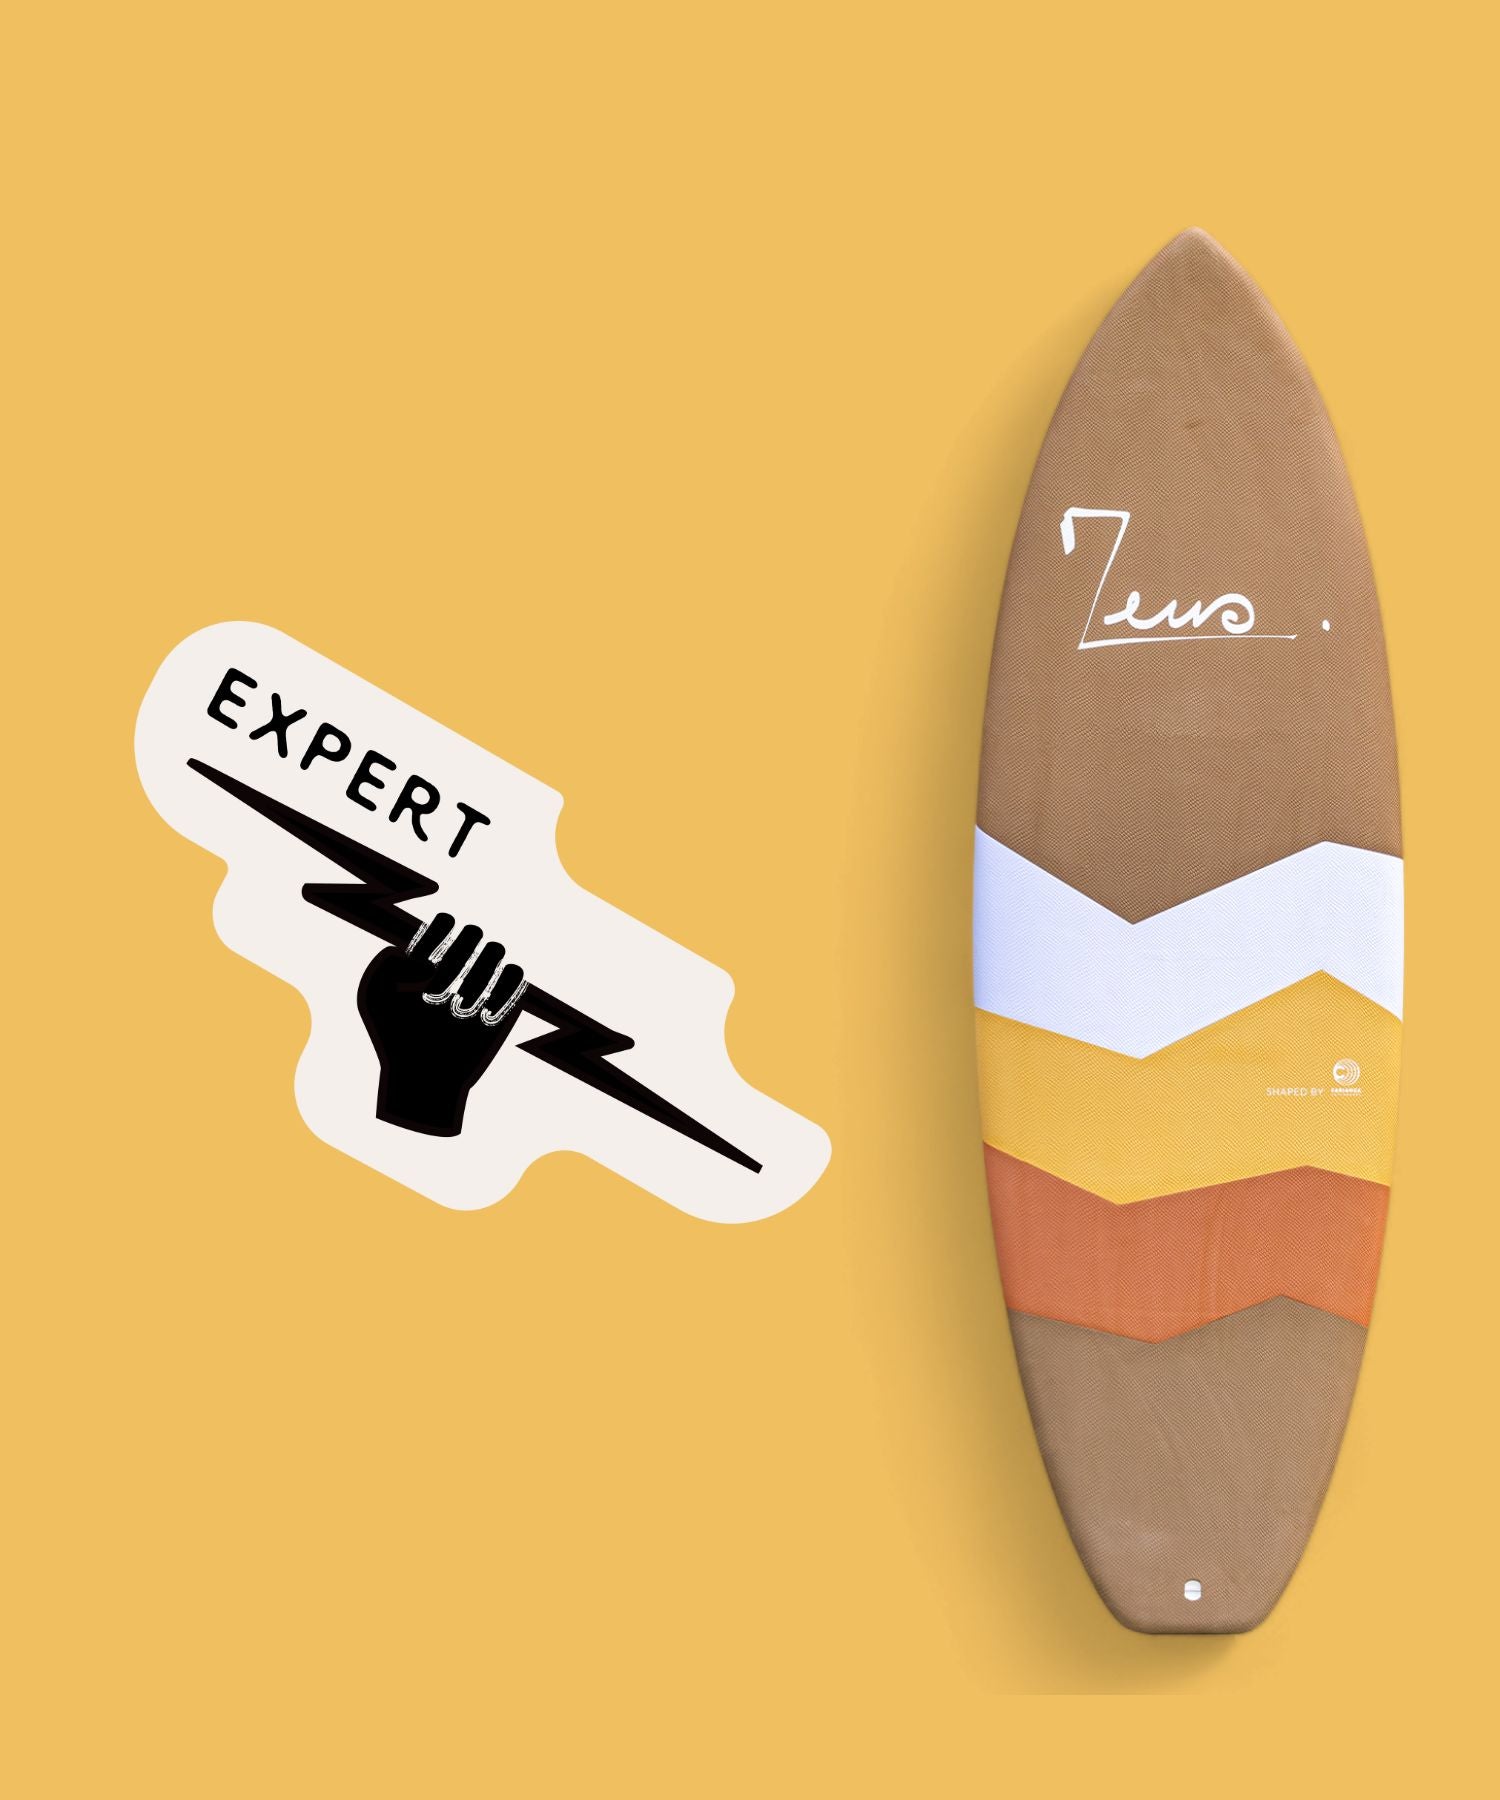 une planche de surf shortboard pour niveau avancé